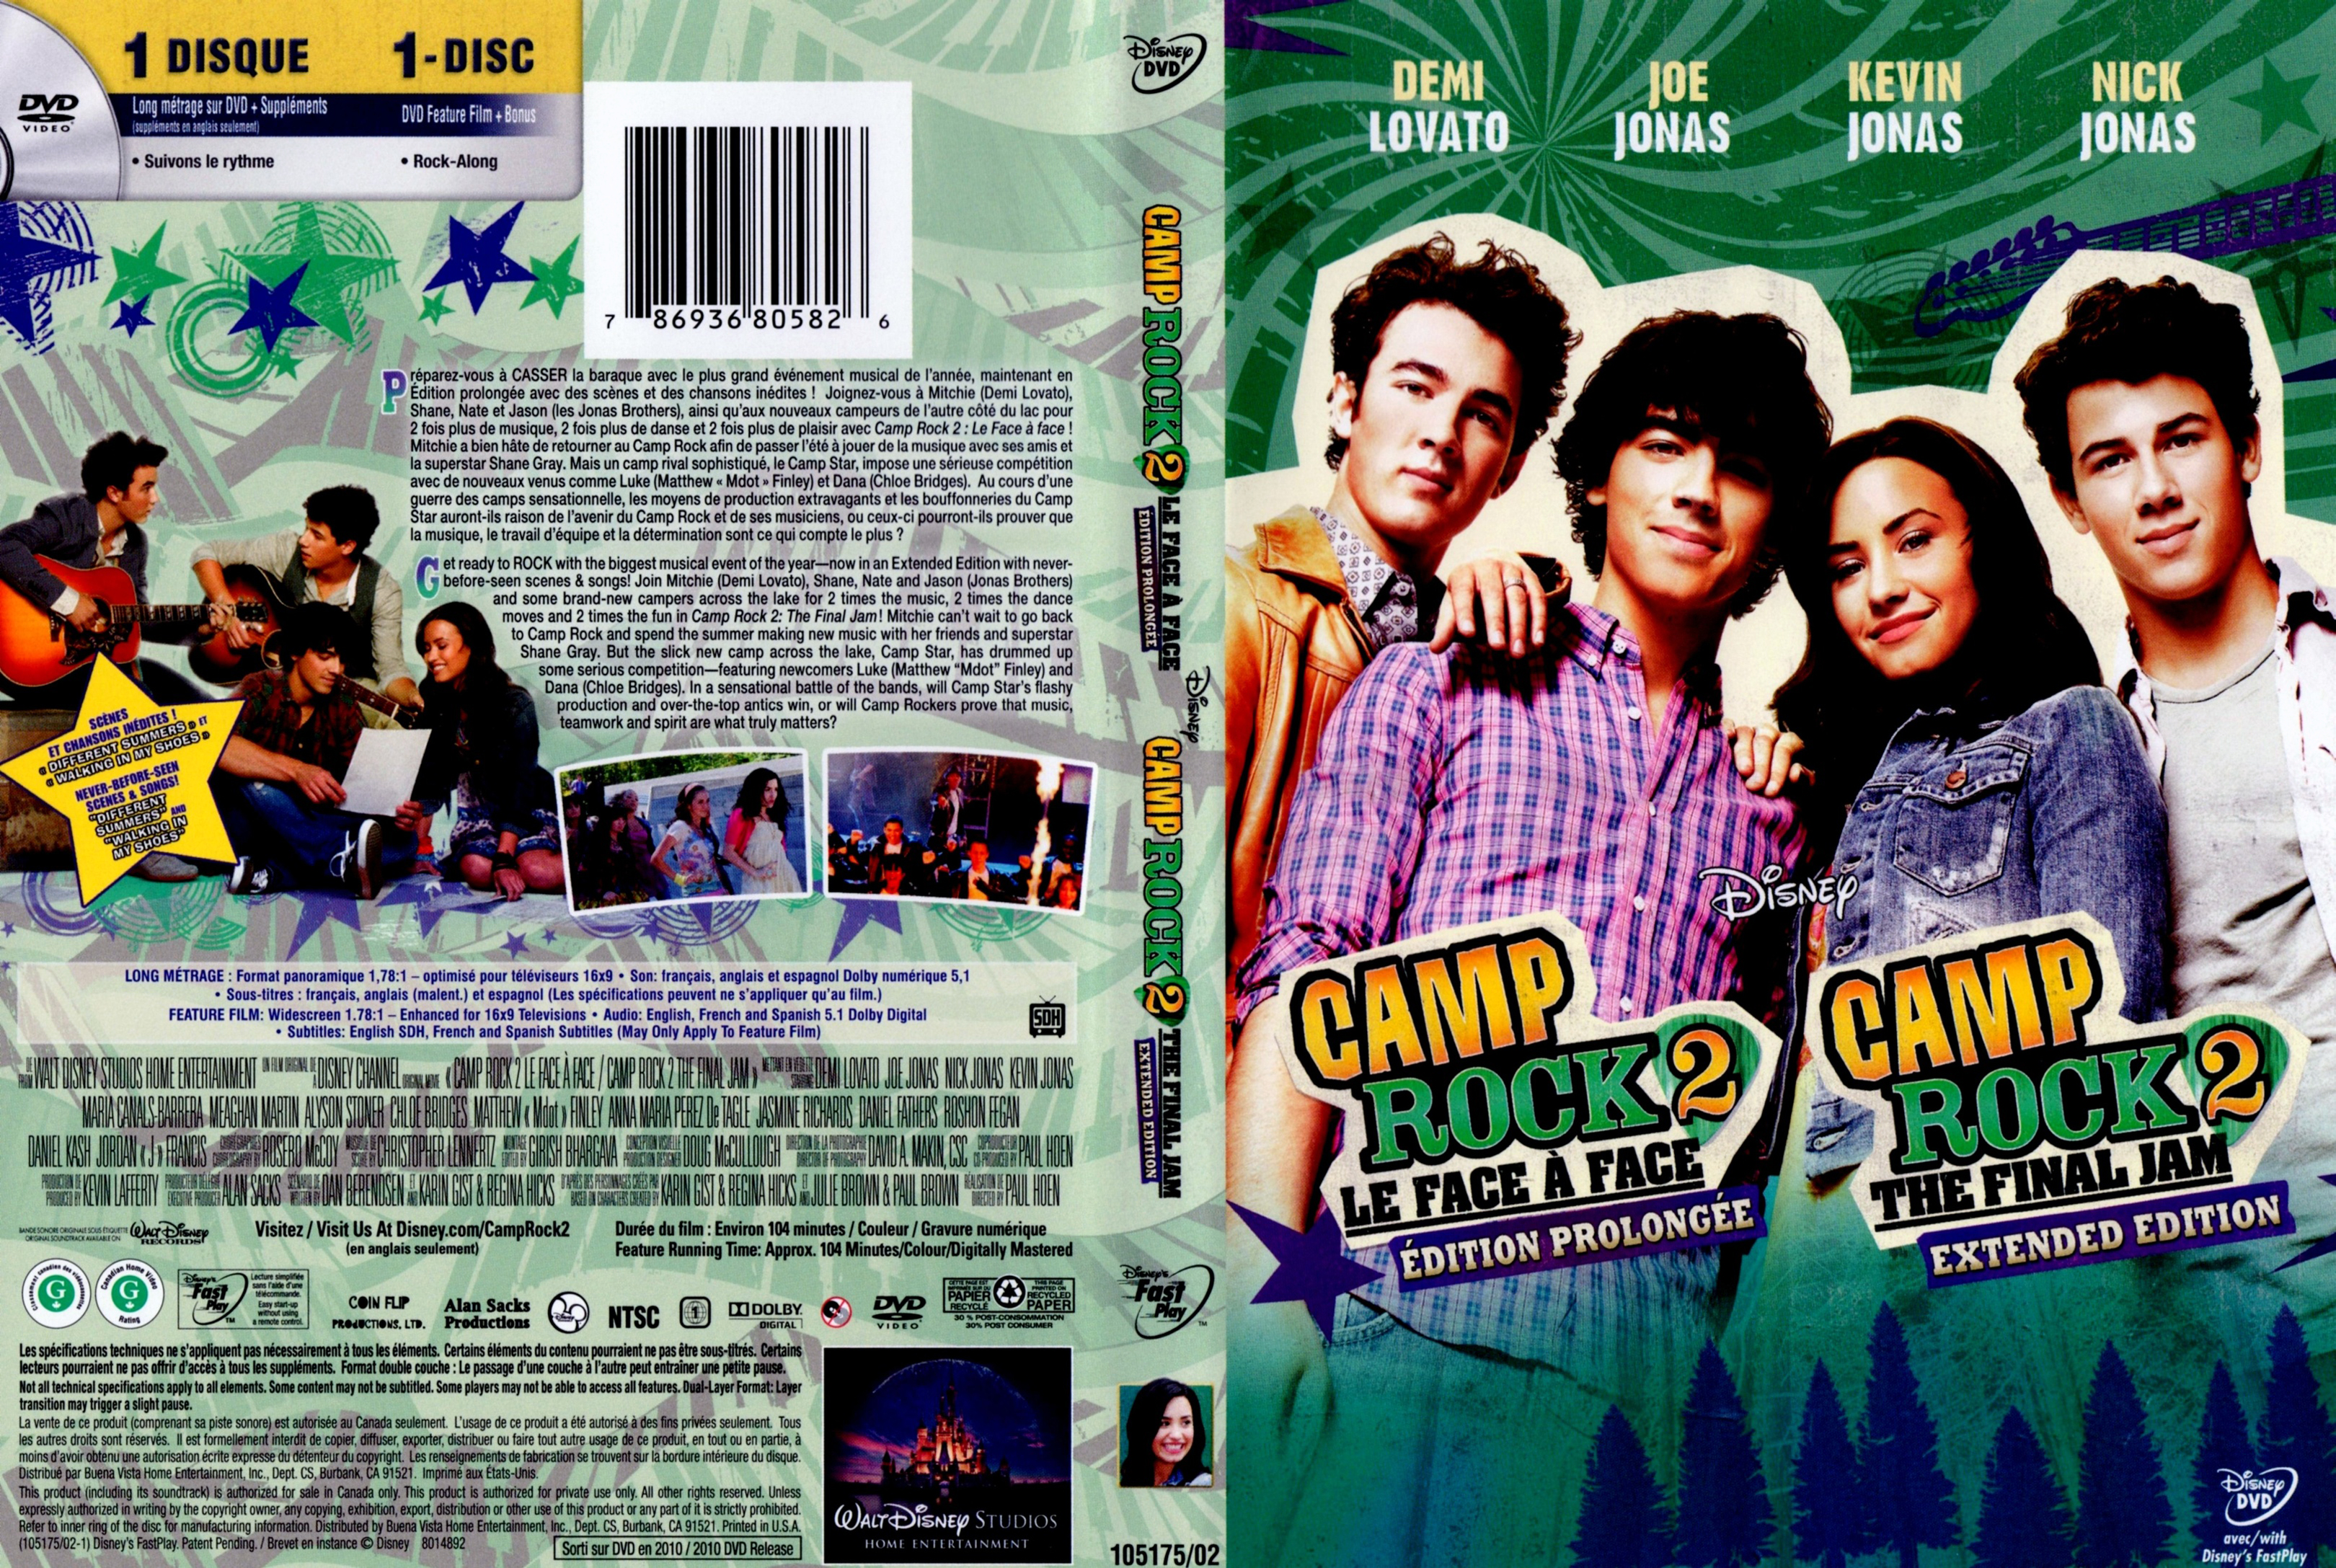 Jaquette DVD de Camp rock 2 (Canadienne) - Cinéma Passion.